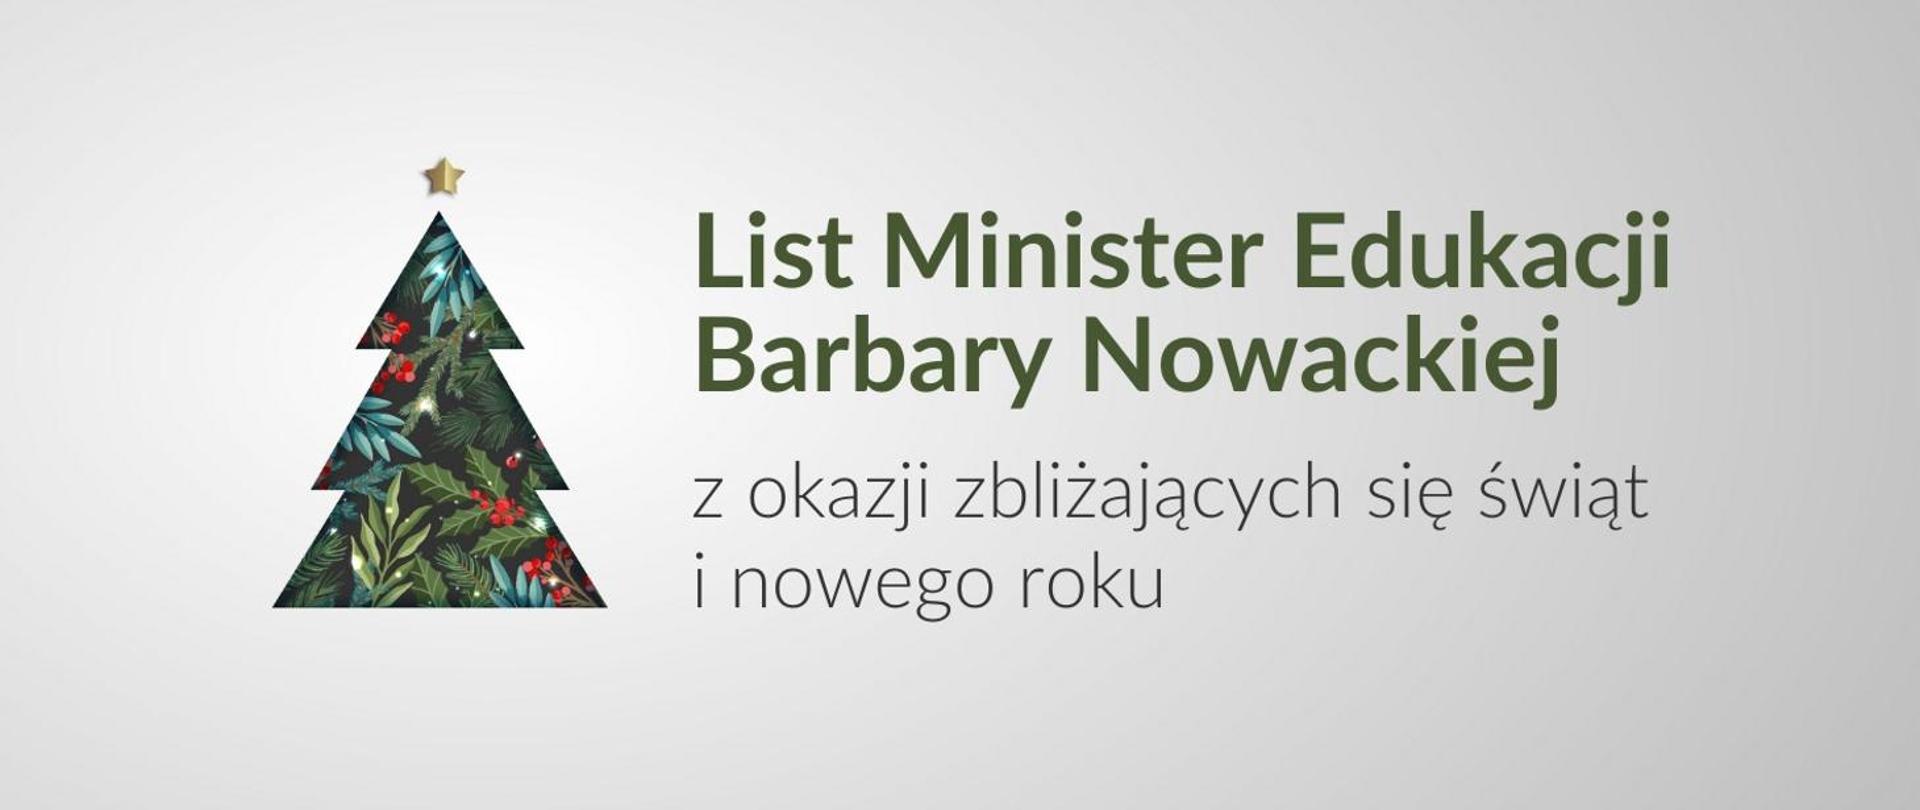 List Minister Edukacji z okazji zbliżających się świąt i nowego roku